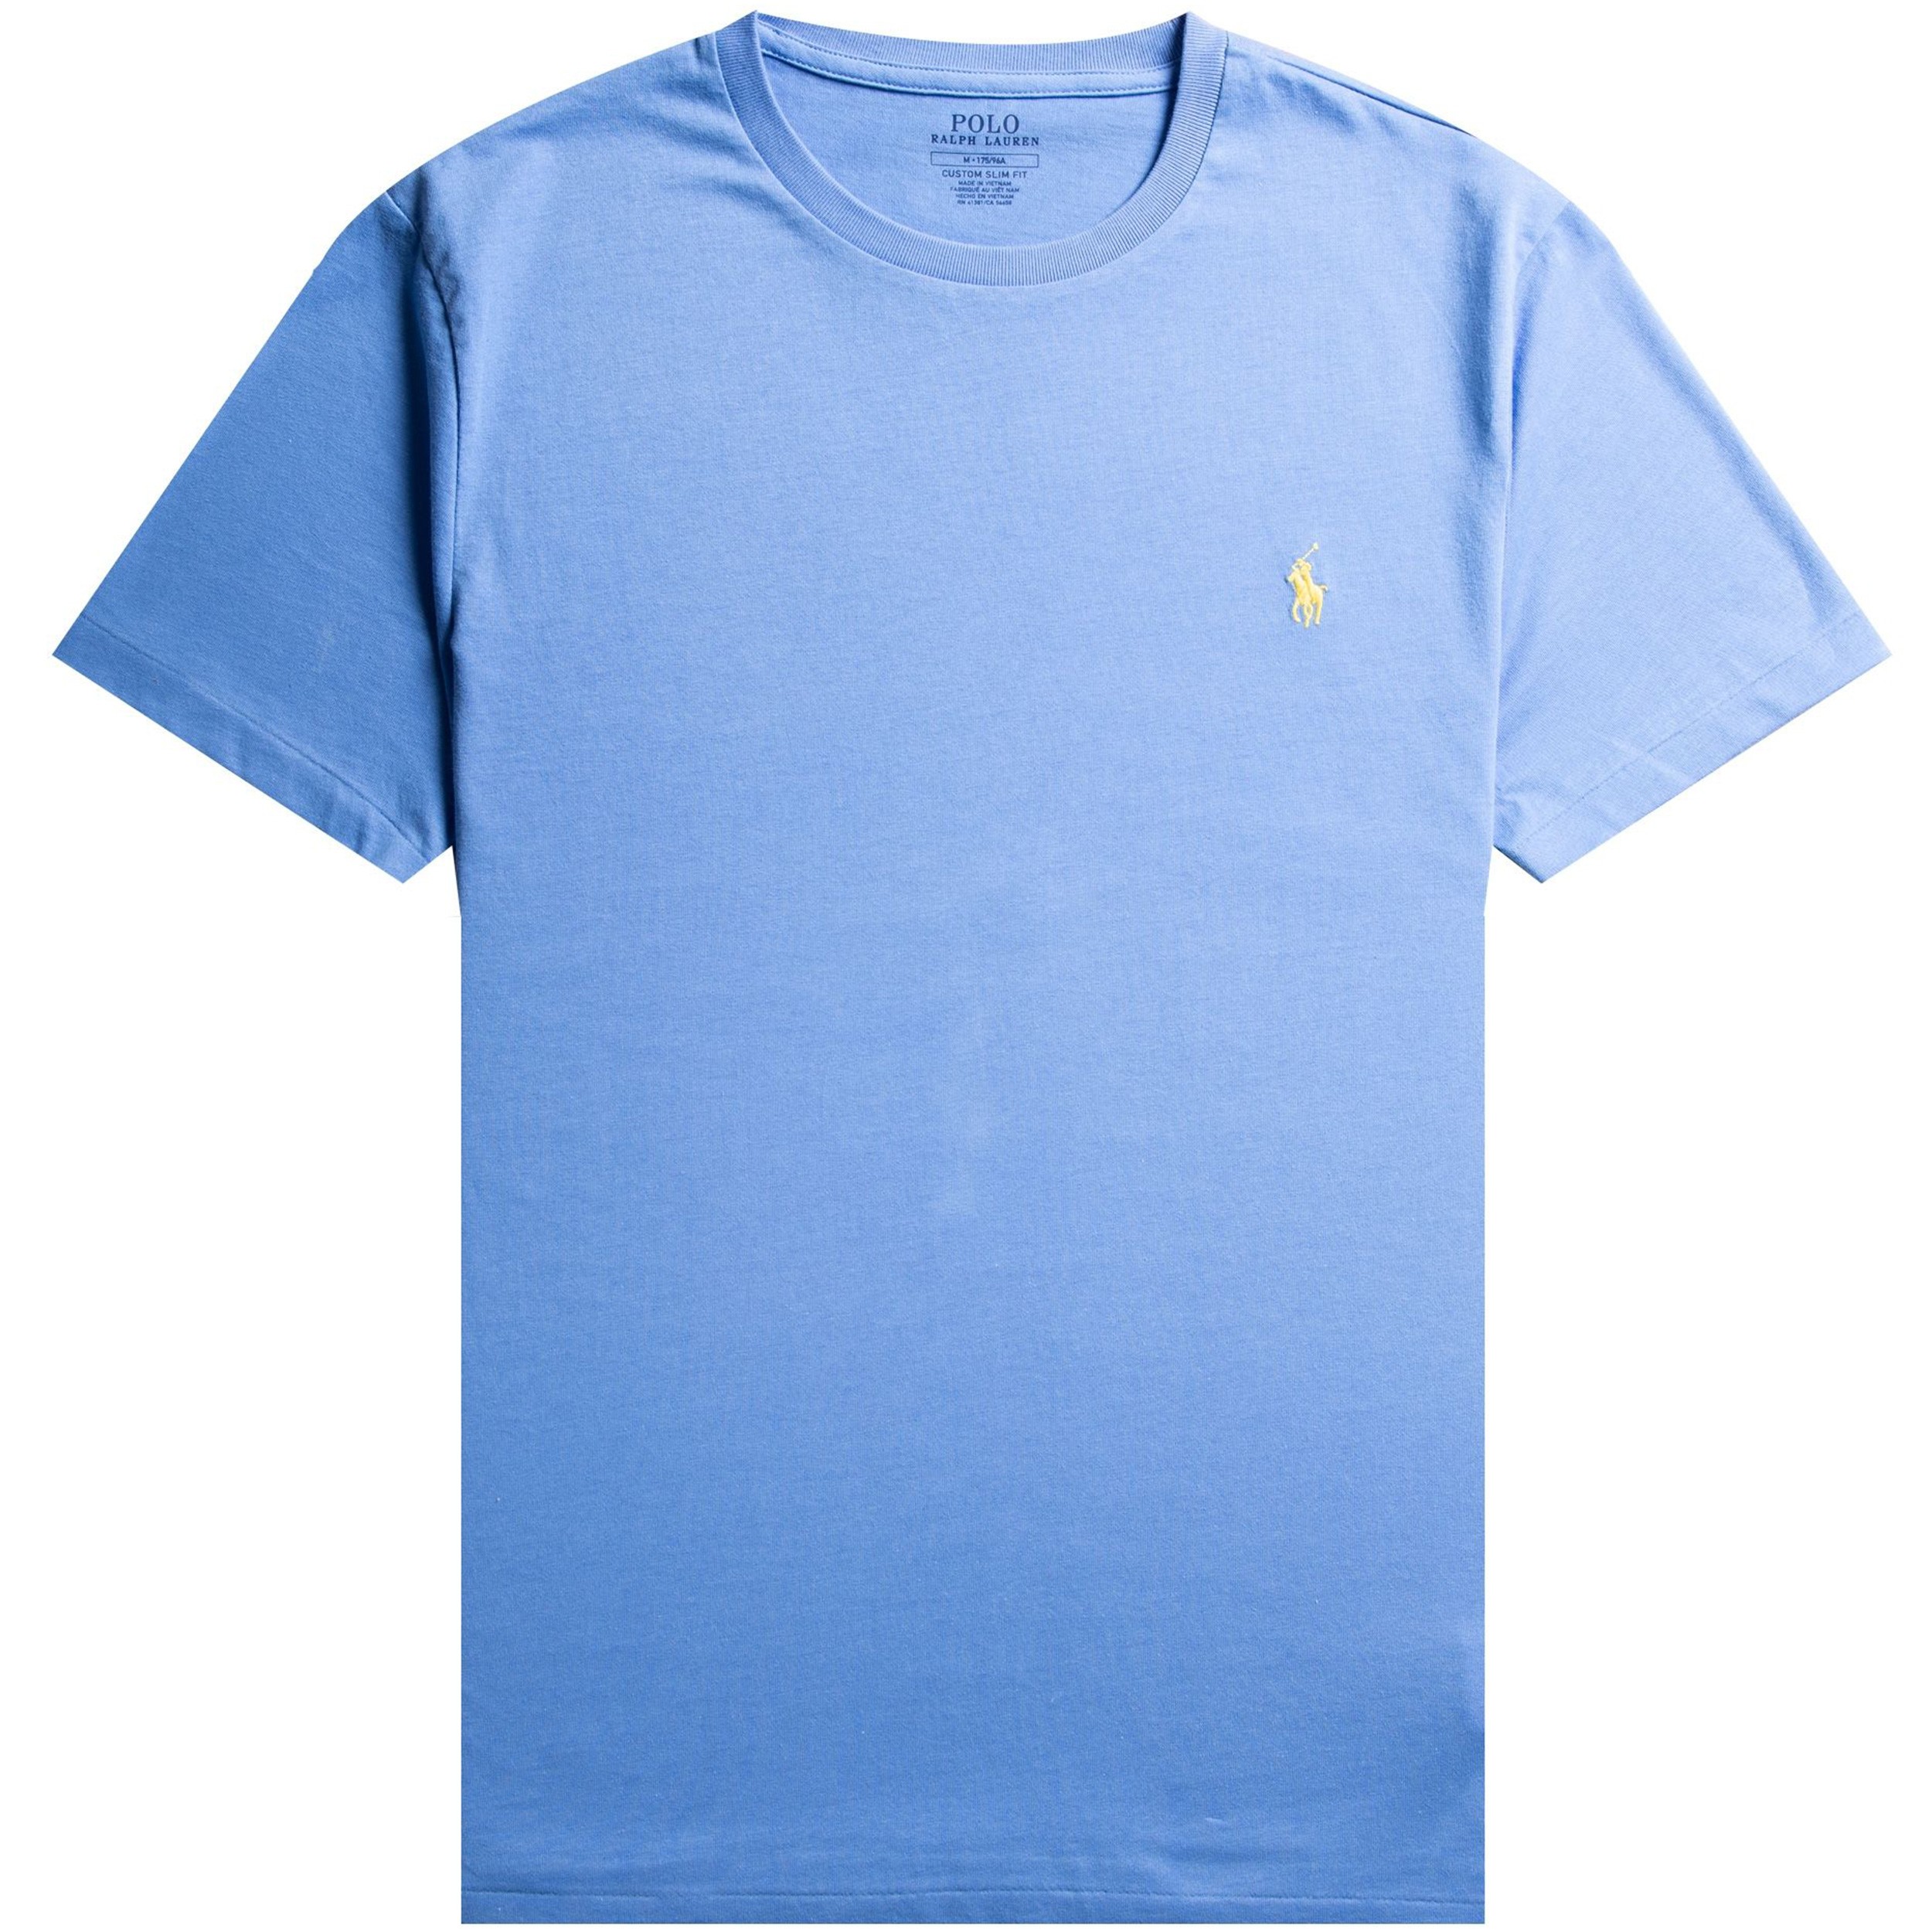 Polo Ralph Lauren Ralph Lauren Custom Slim Fit Crew Neck T-Shirt Baby Blue